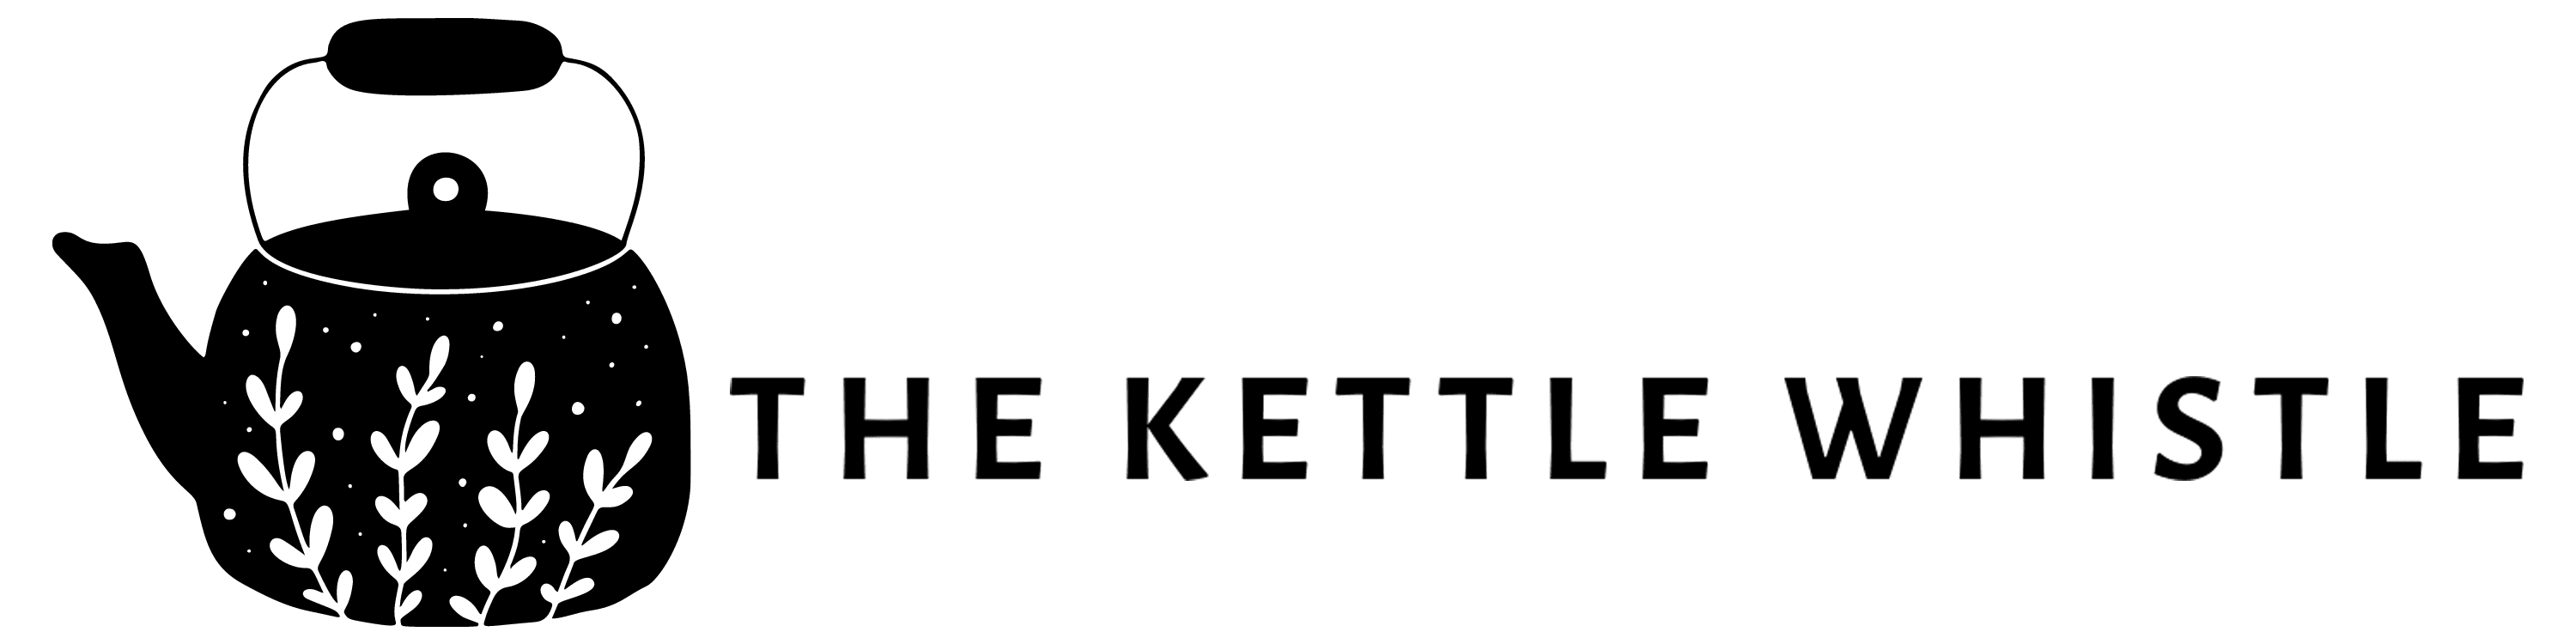 the kettle whistle website logo